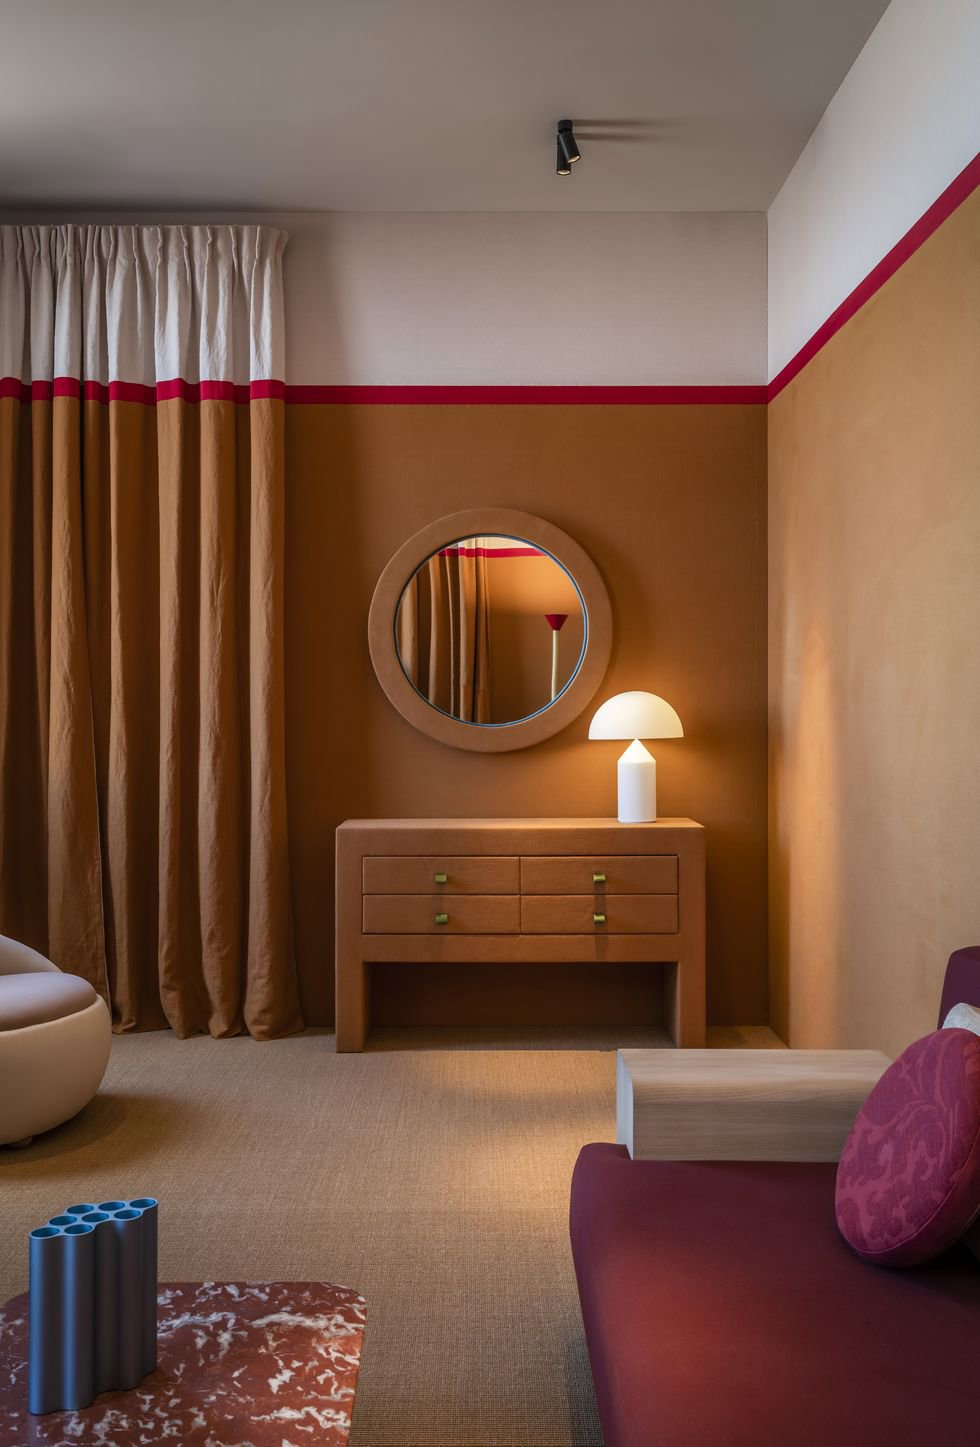 dormitorio marrón tejido integrado en la pared marrón y rojo